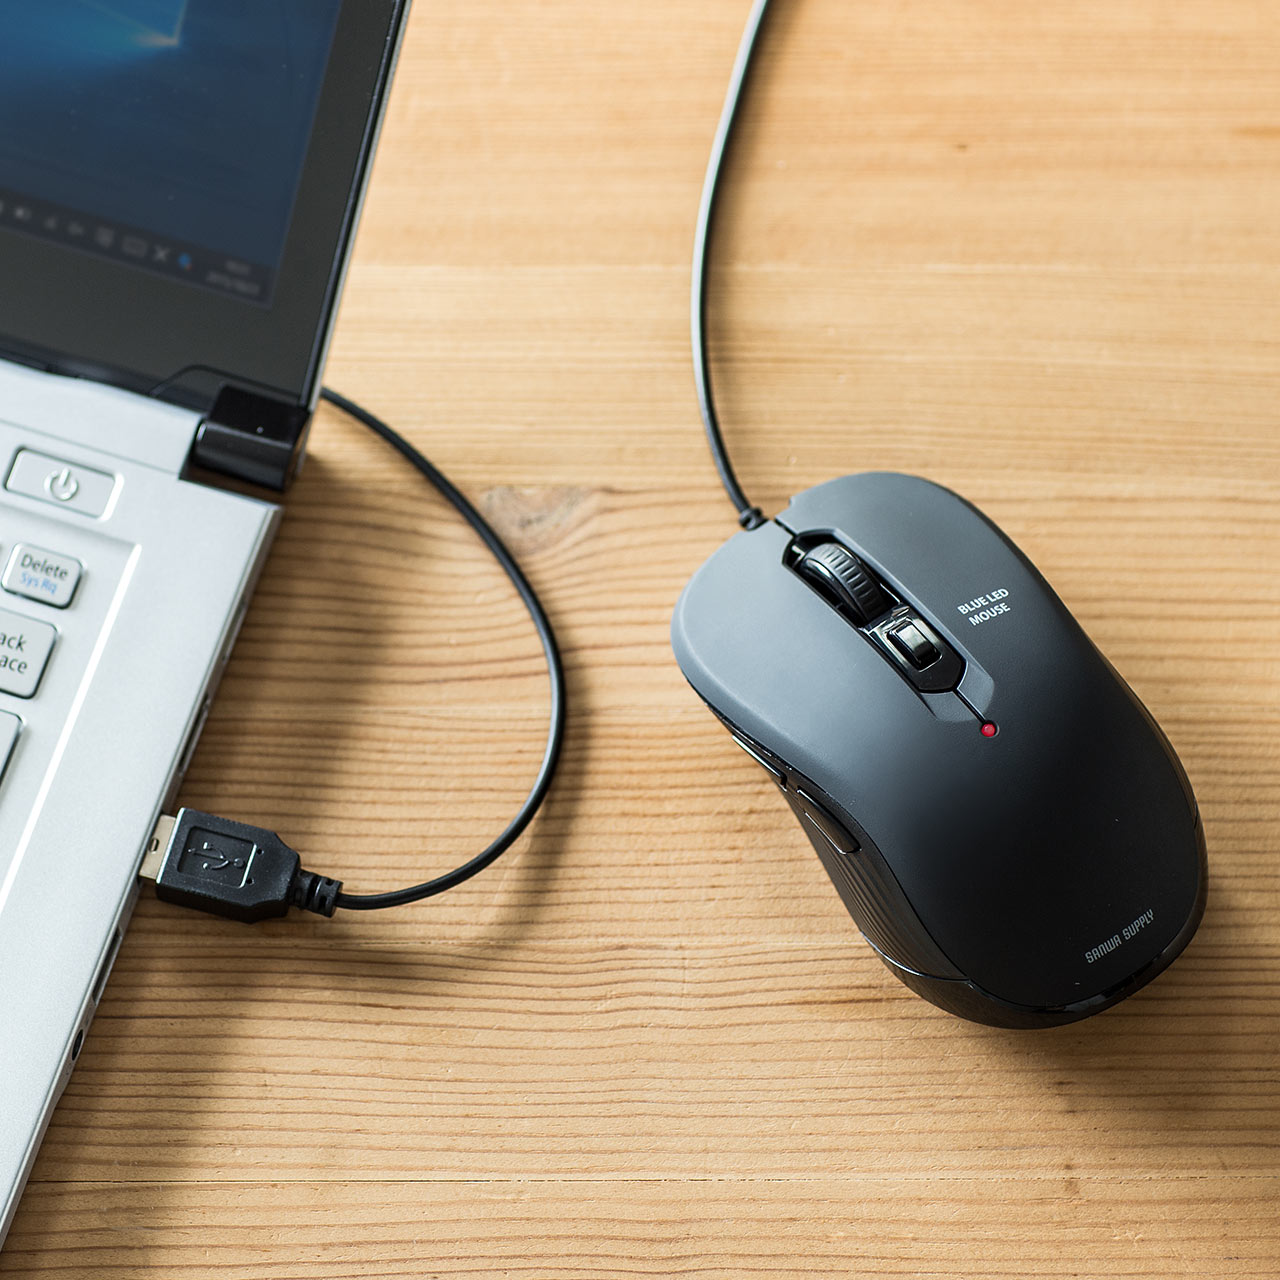 【ビジネス応援セール】有線マウス USB Aコネクタ 高感度 ブルーLEDセンサー 5ボタン カウント切替 ブラック 400-MA096